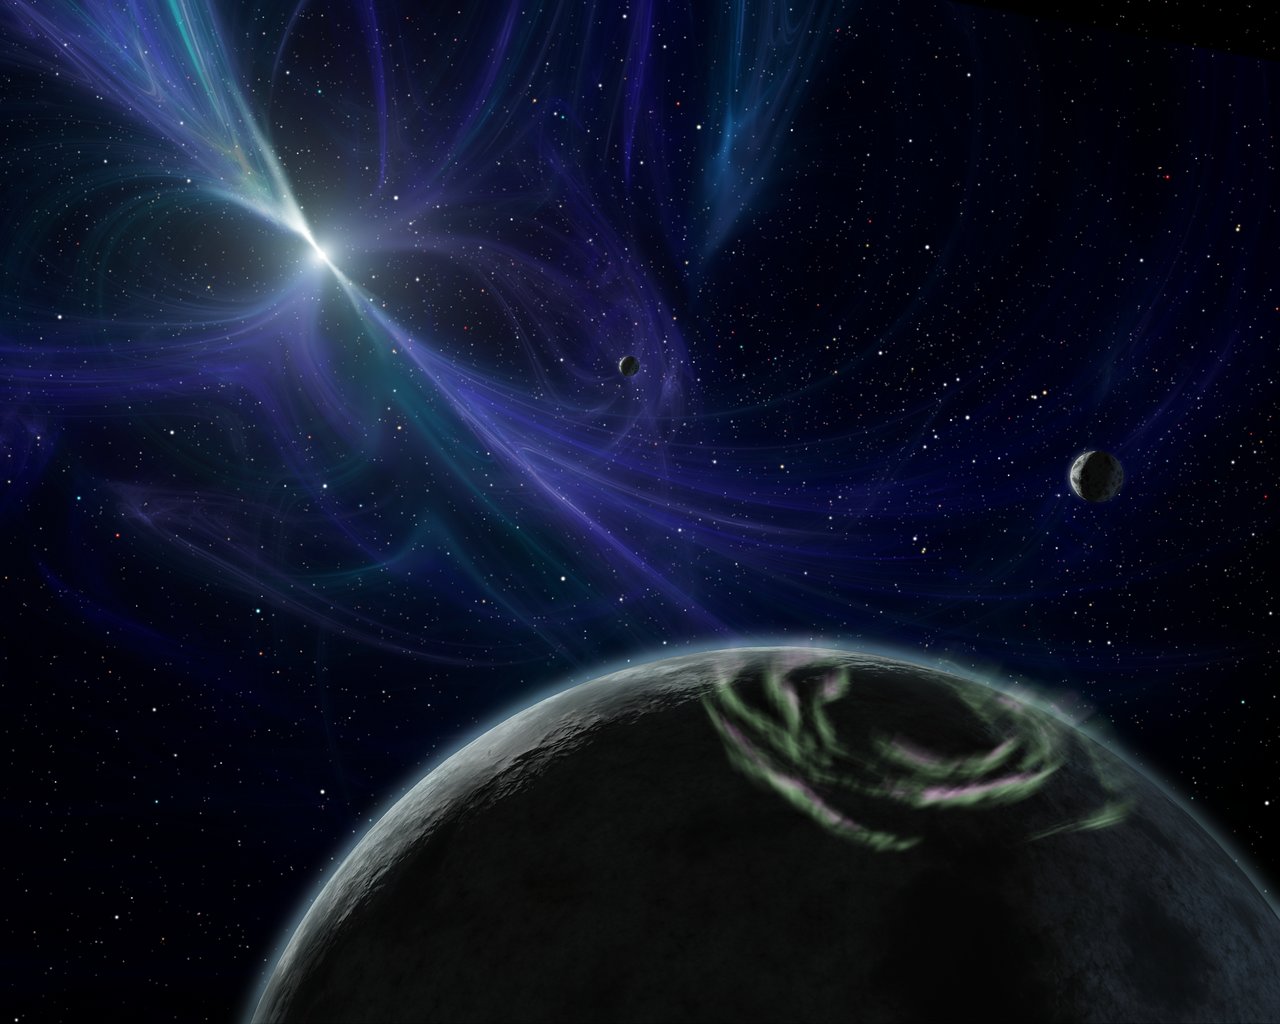 A planet orbits a pulsar